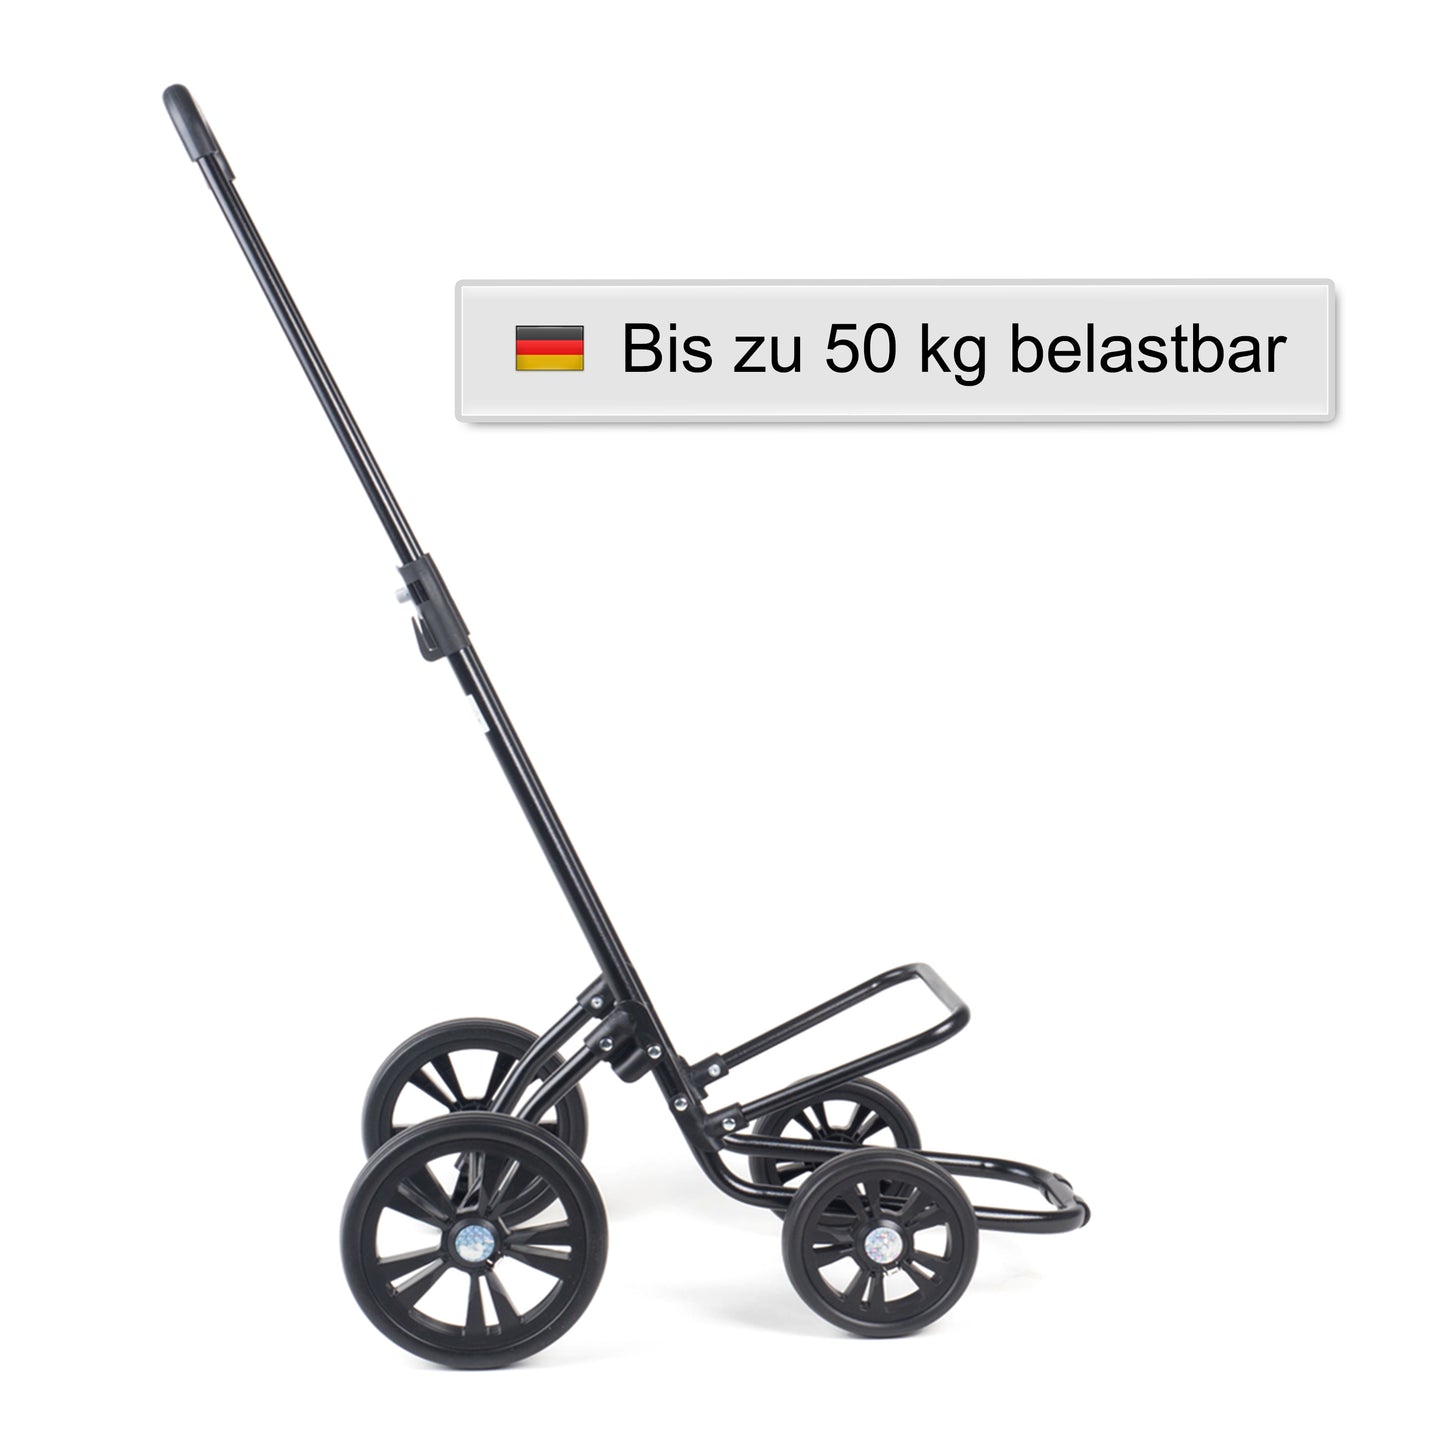 Quattro Shopper Senta 2.0 schwarz leichtlaufende abnehmbare Räder - 20 cm